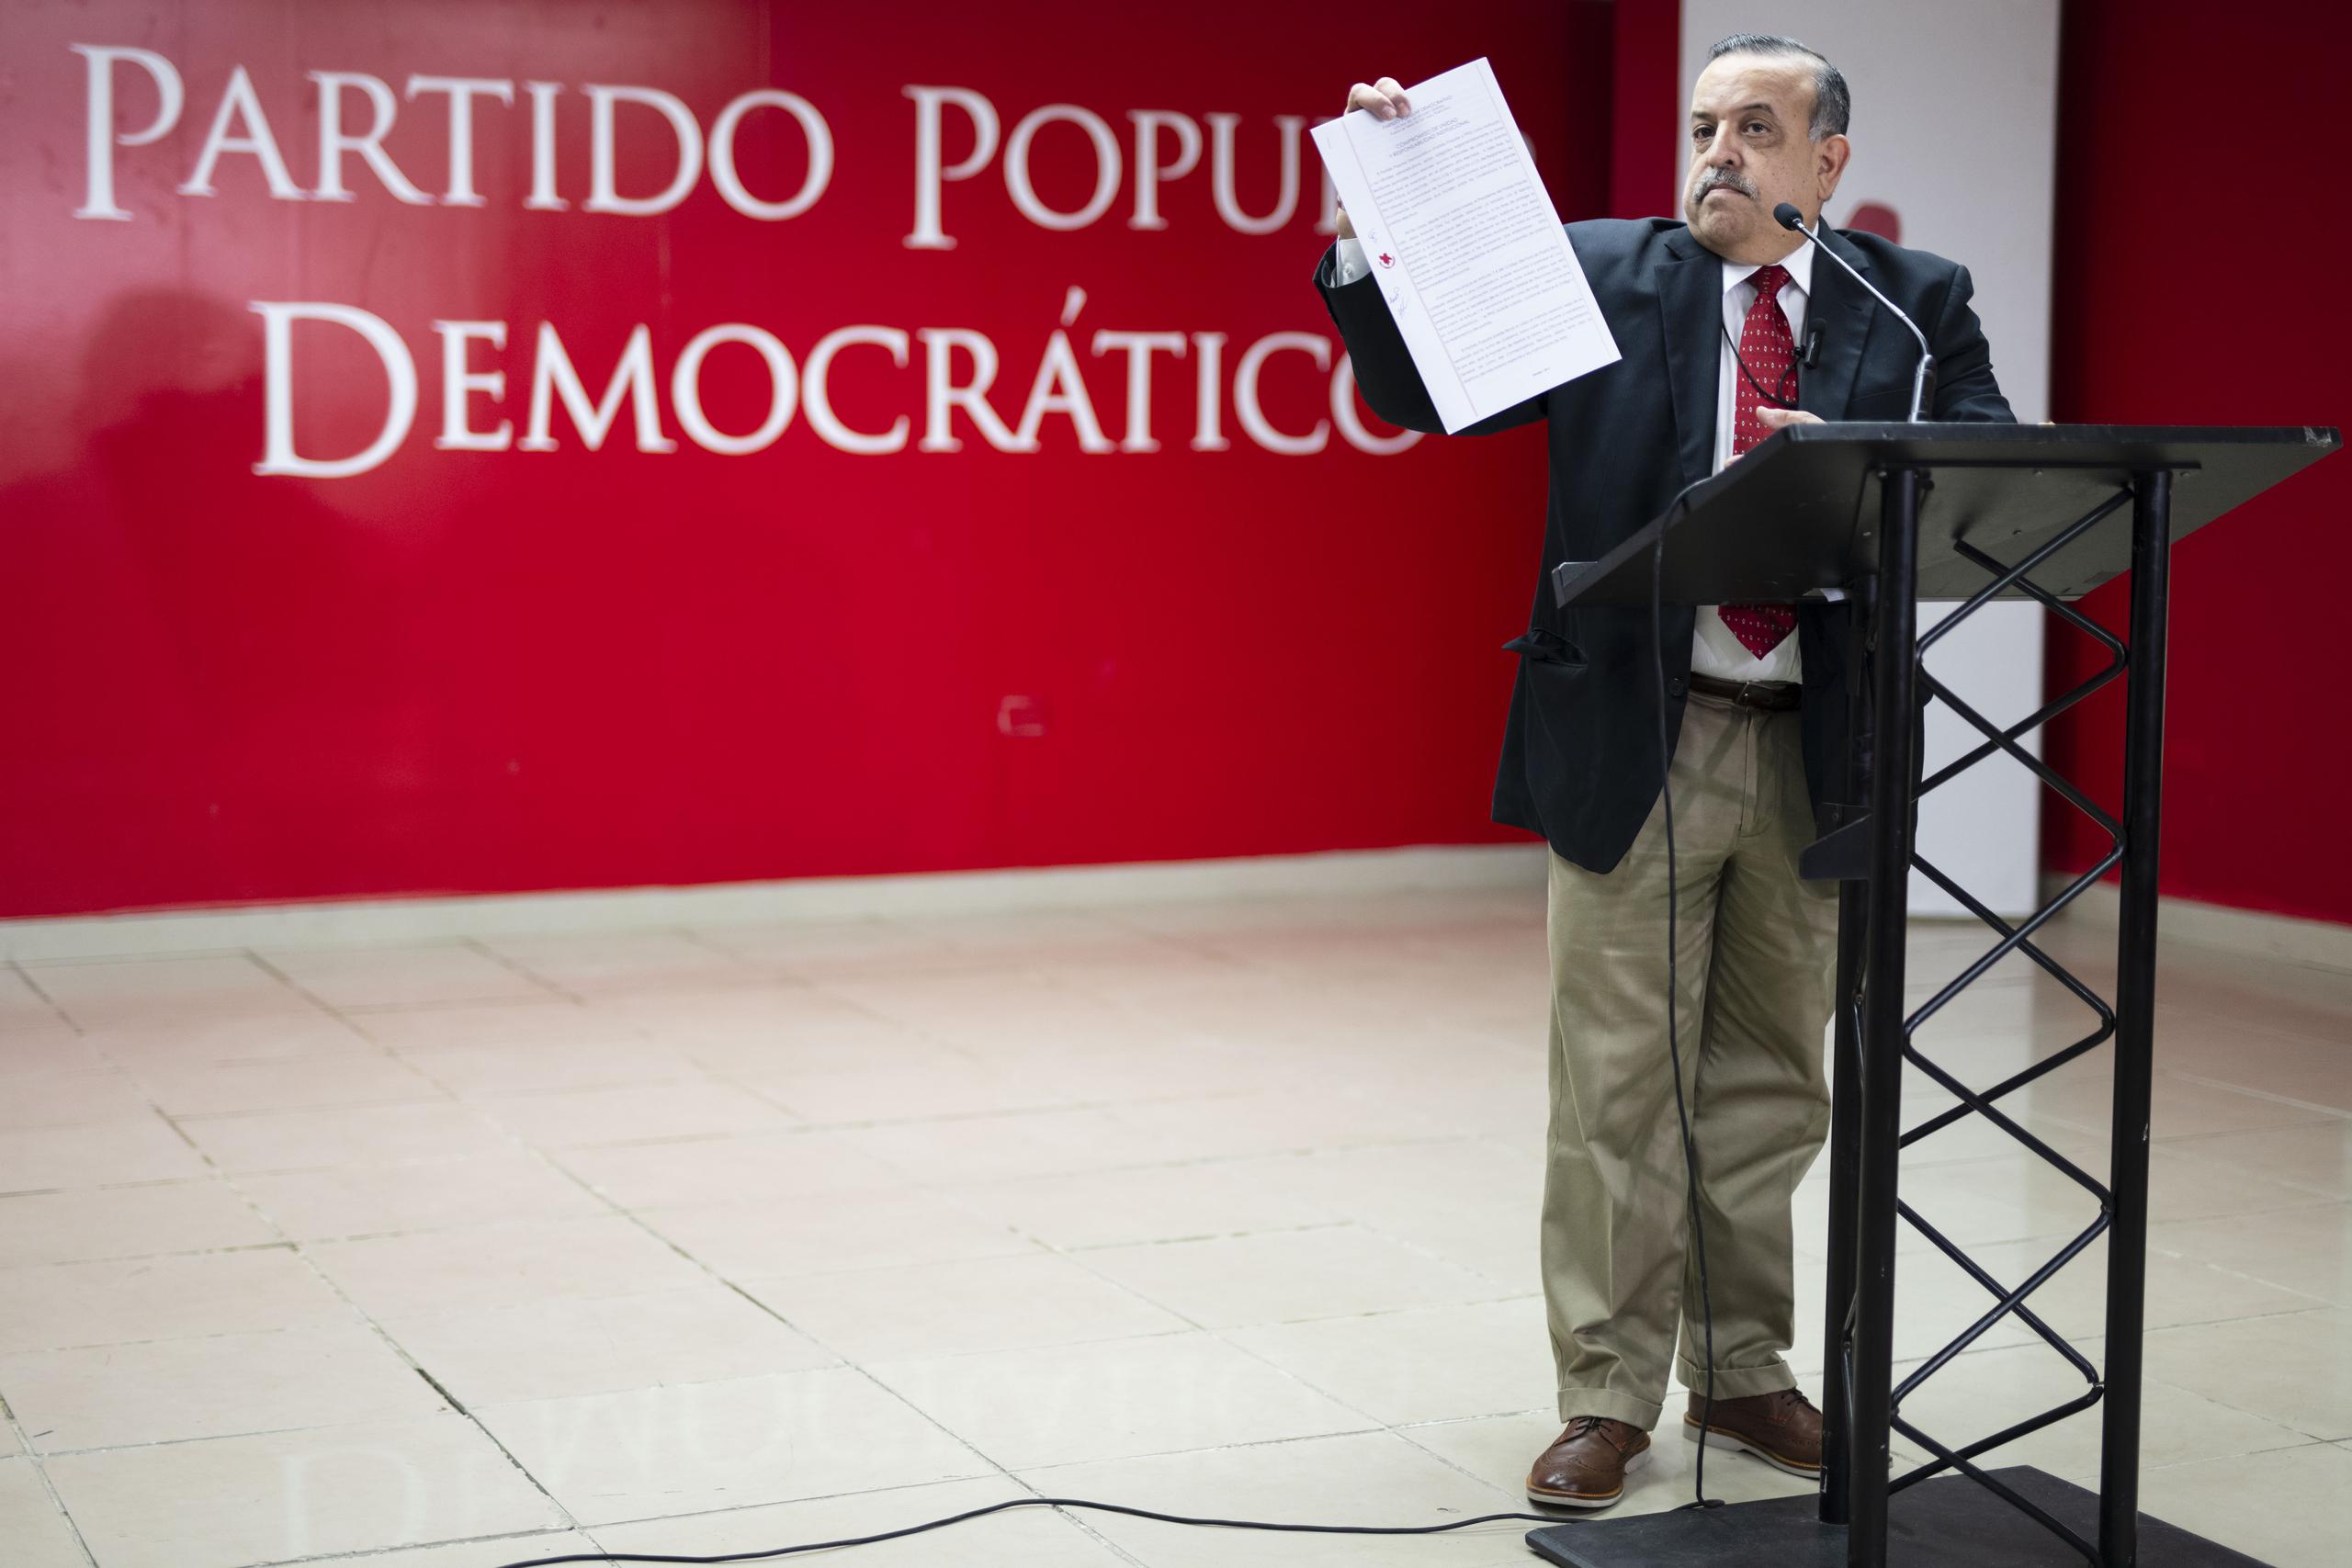 El secretario general del PPD, Gerardo "Toñito" Cruz, subrayó que el uso de fondos públicos para fines político-partidistas es inaceptable.